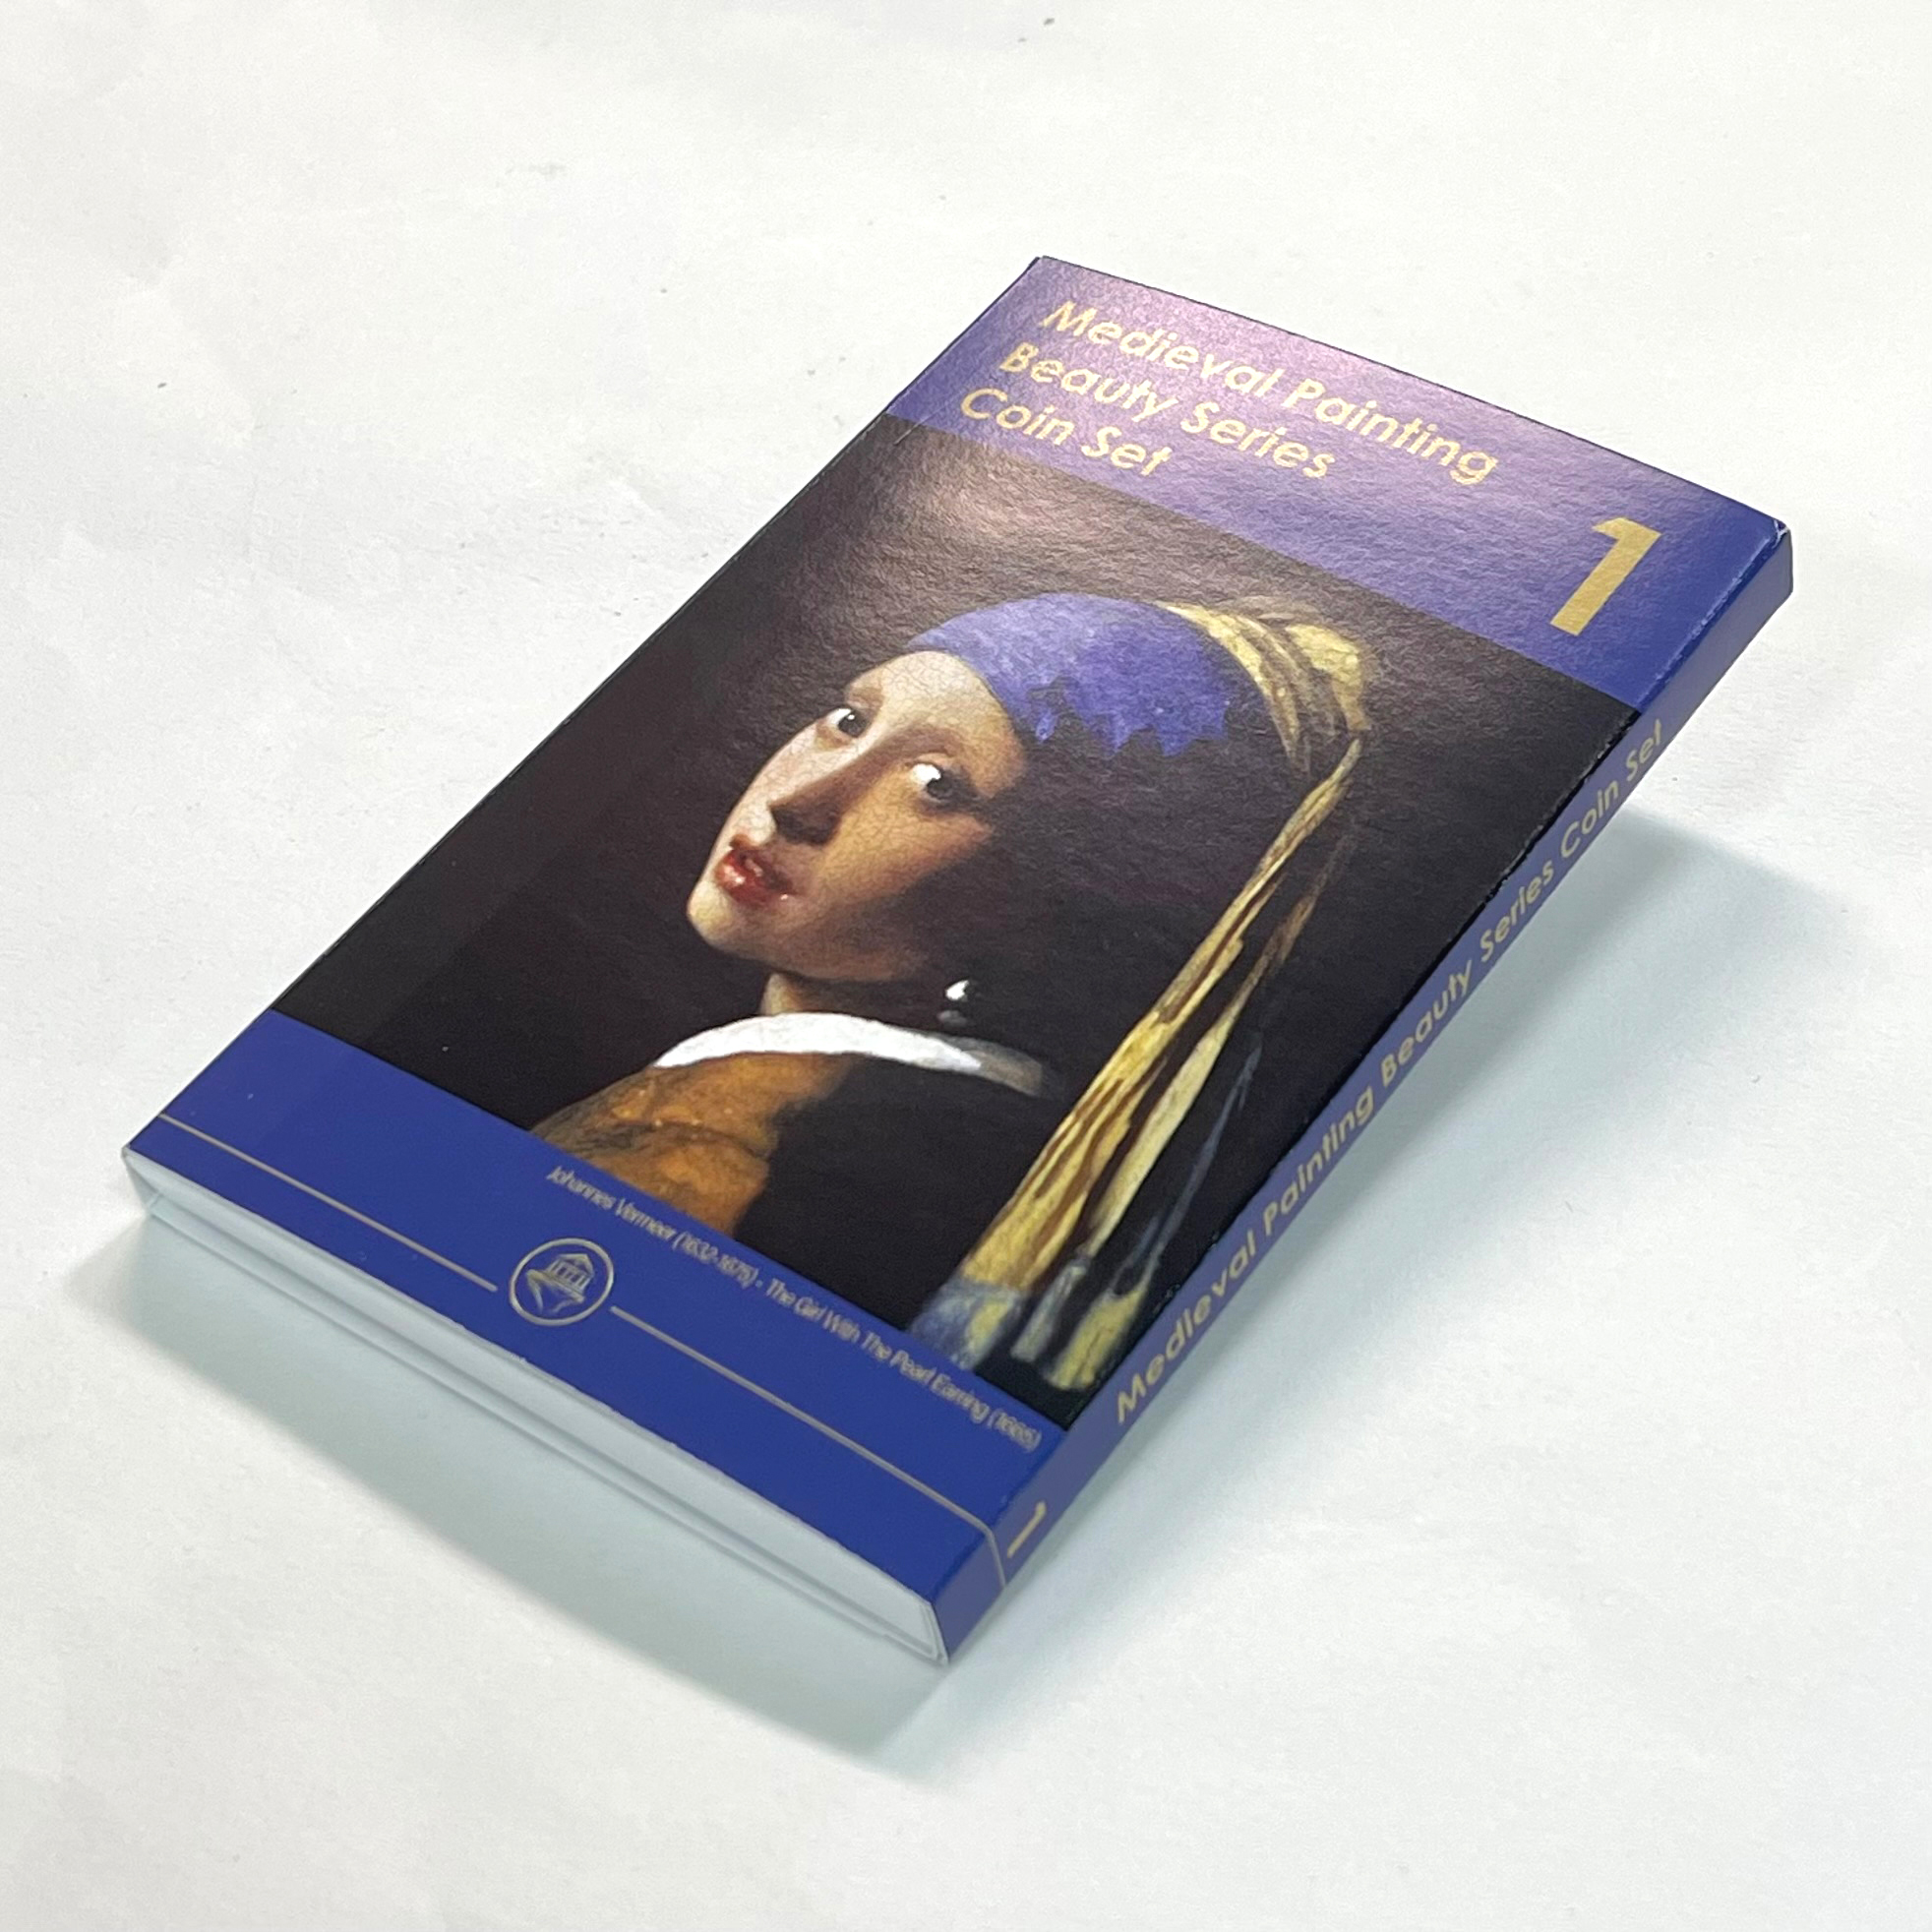 『真珠の耳飾りの少女』豪華スリーブ付 中世絵画の美人シリーズ・コインセット